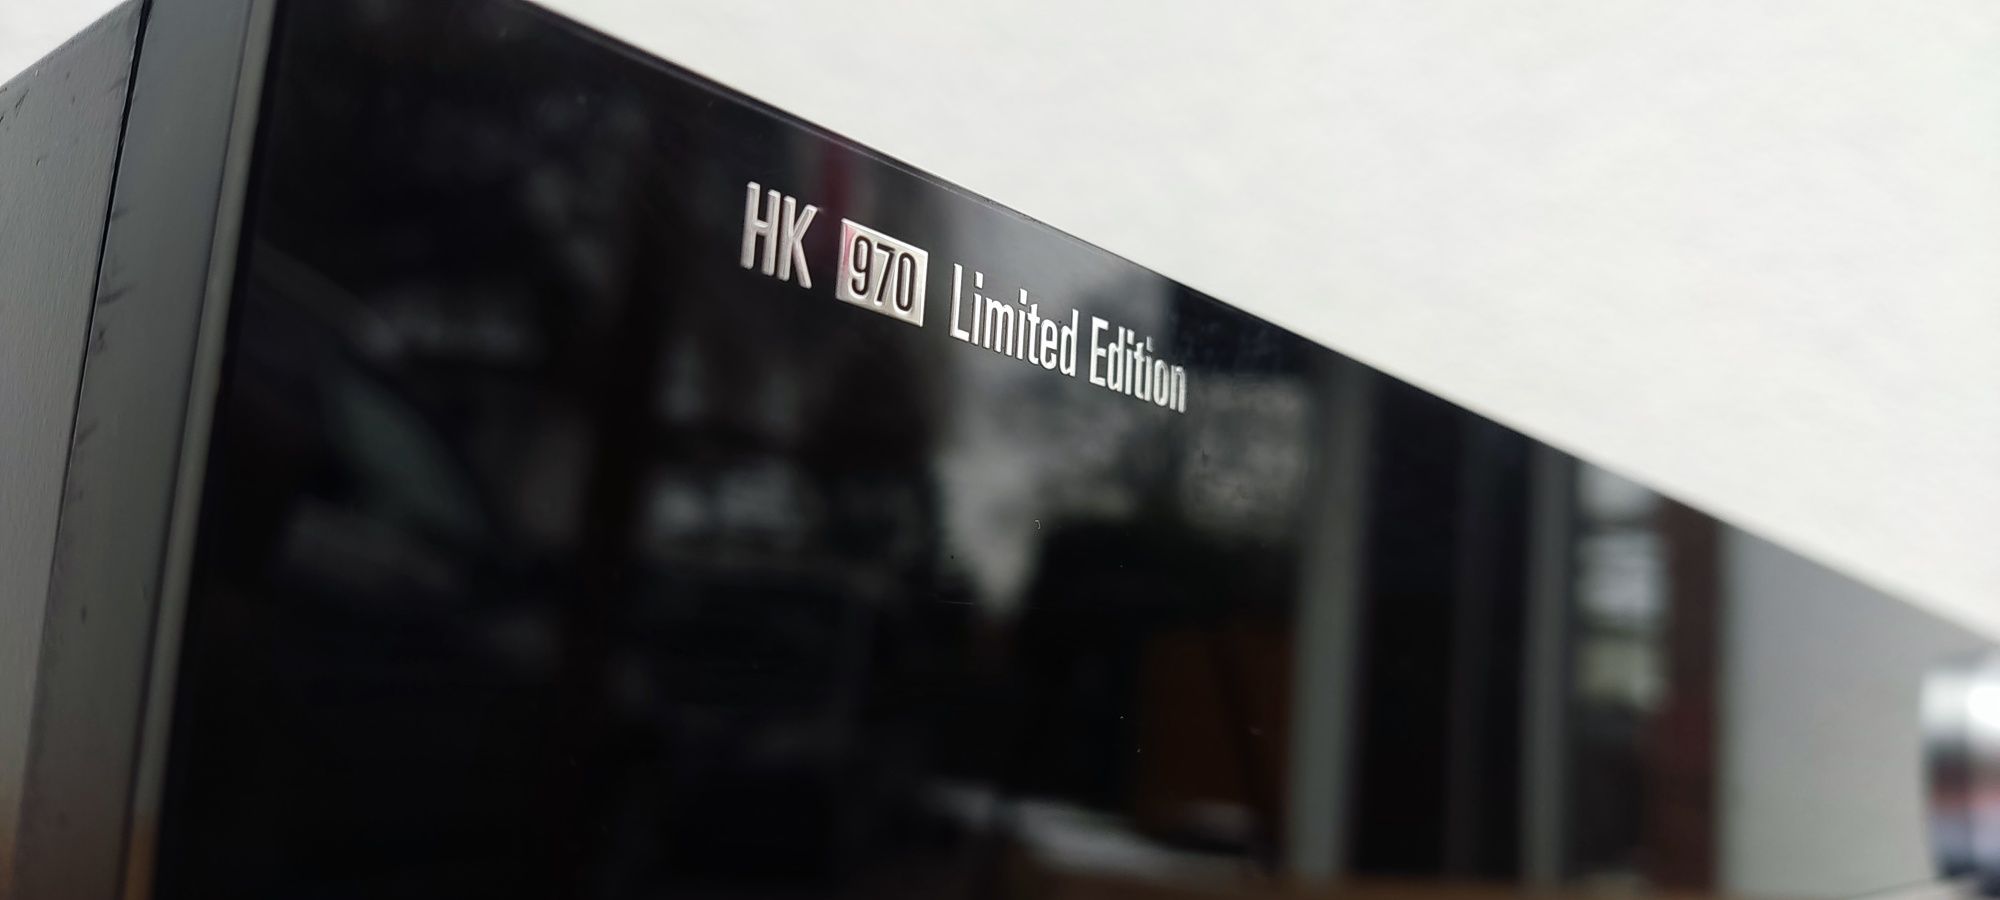 Harman Kardon HK970 EISA Limited Edition topowy wzmacniacz stereo